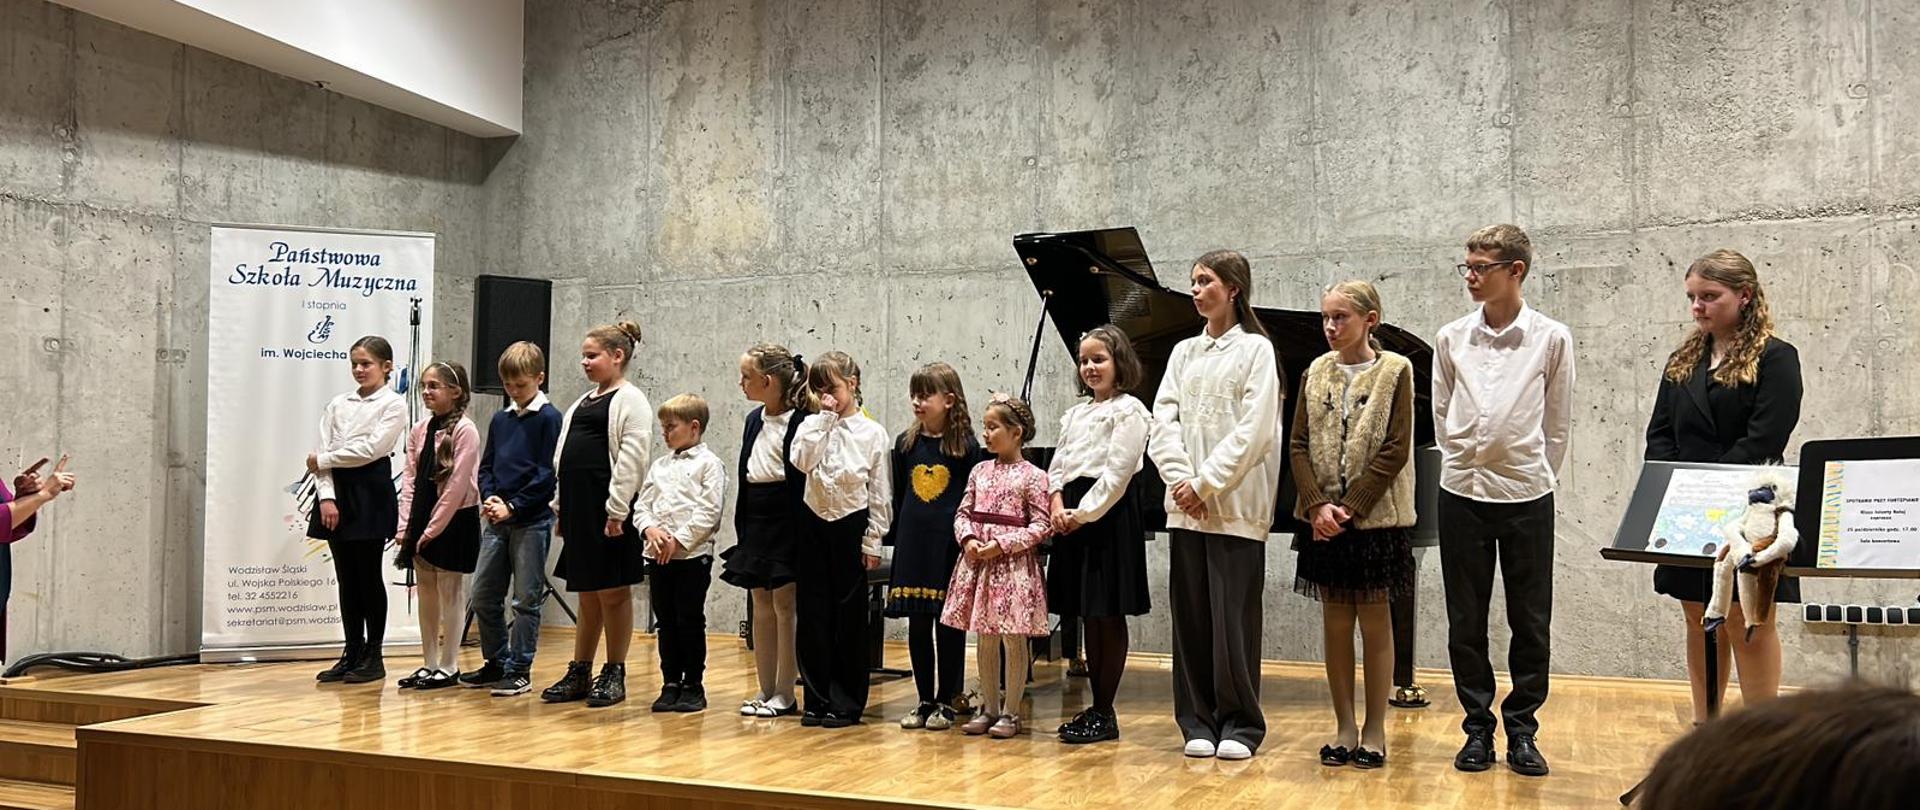 Grupa uczniów stoi na scenie sali koncertowej, fortepian w tle